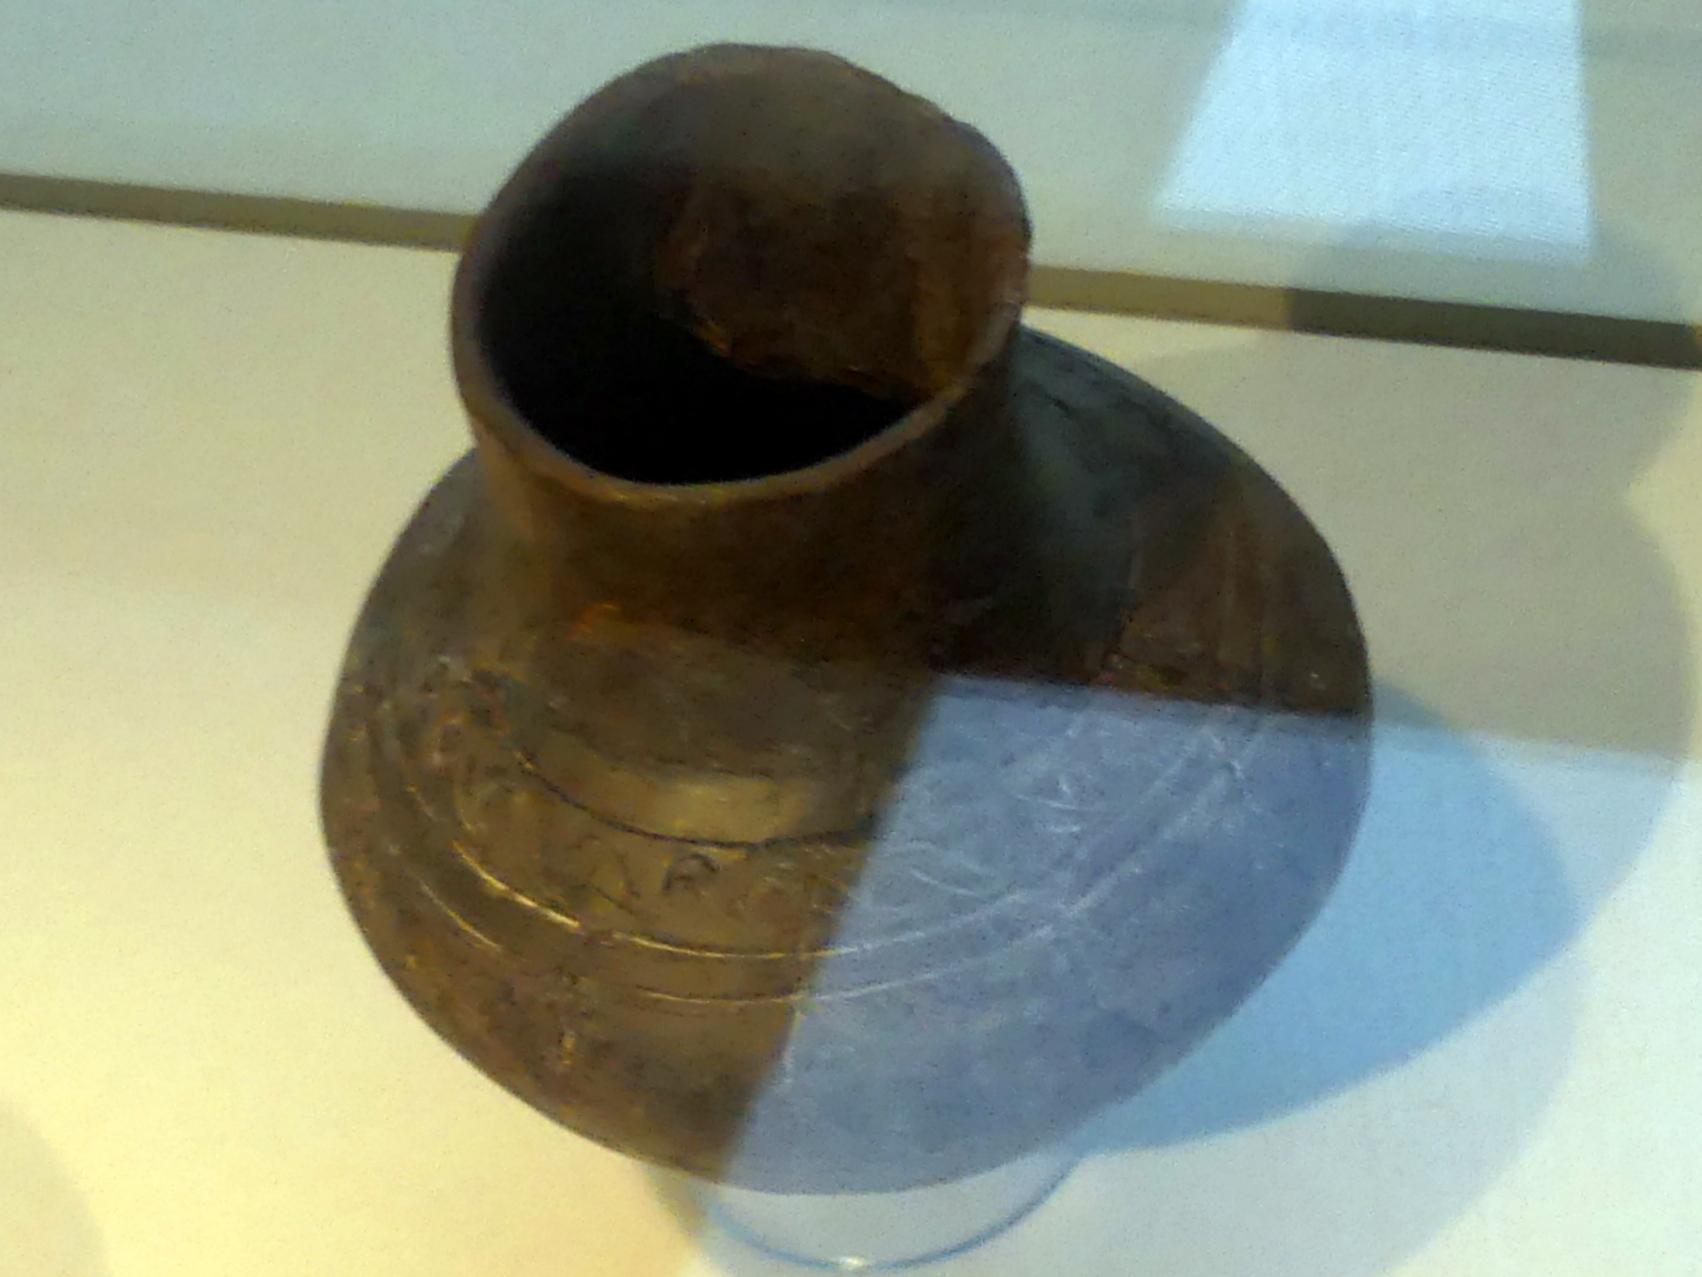 Linsenflasche, Latènezeit, 700 - 1 v. Chr., Bild 1/2